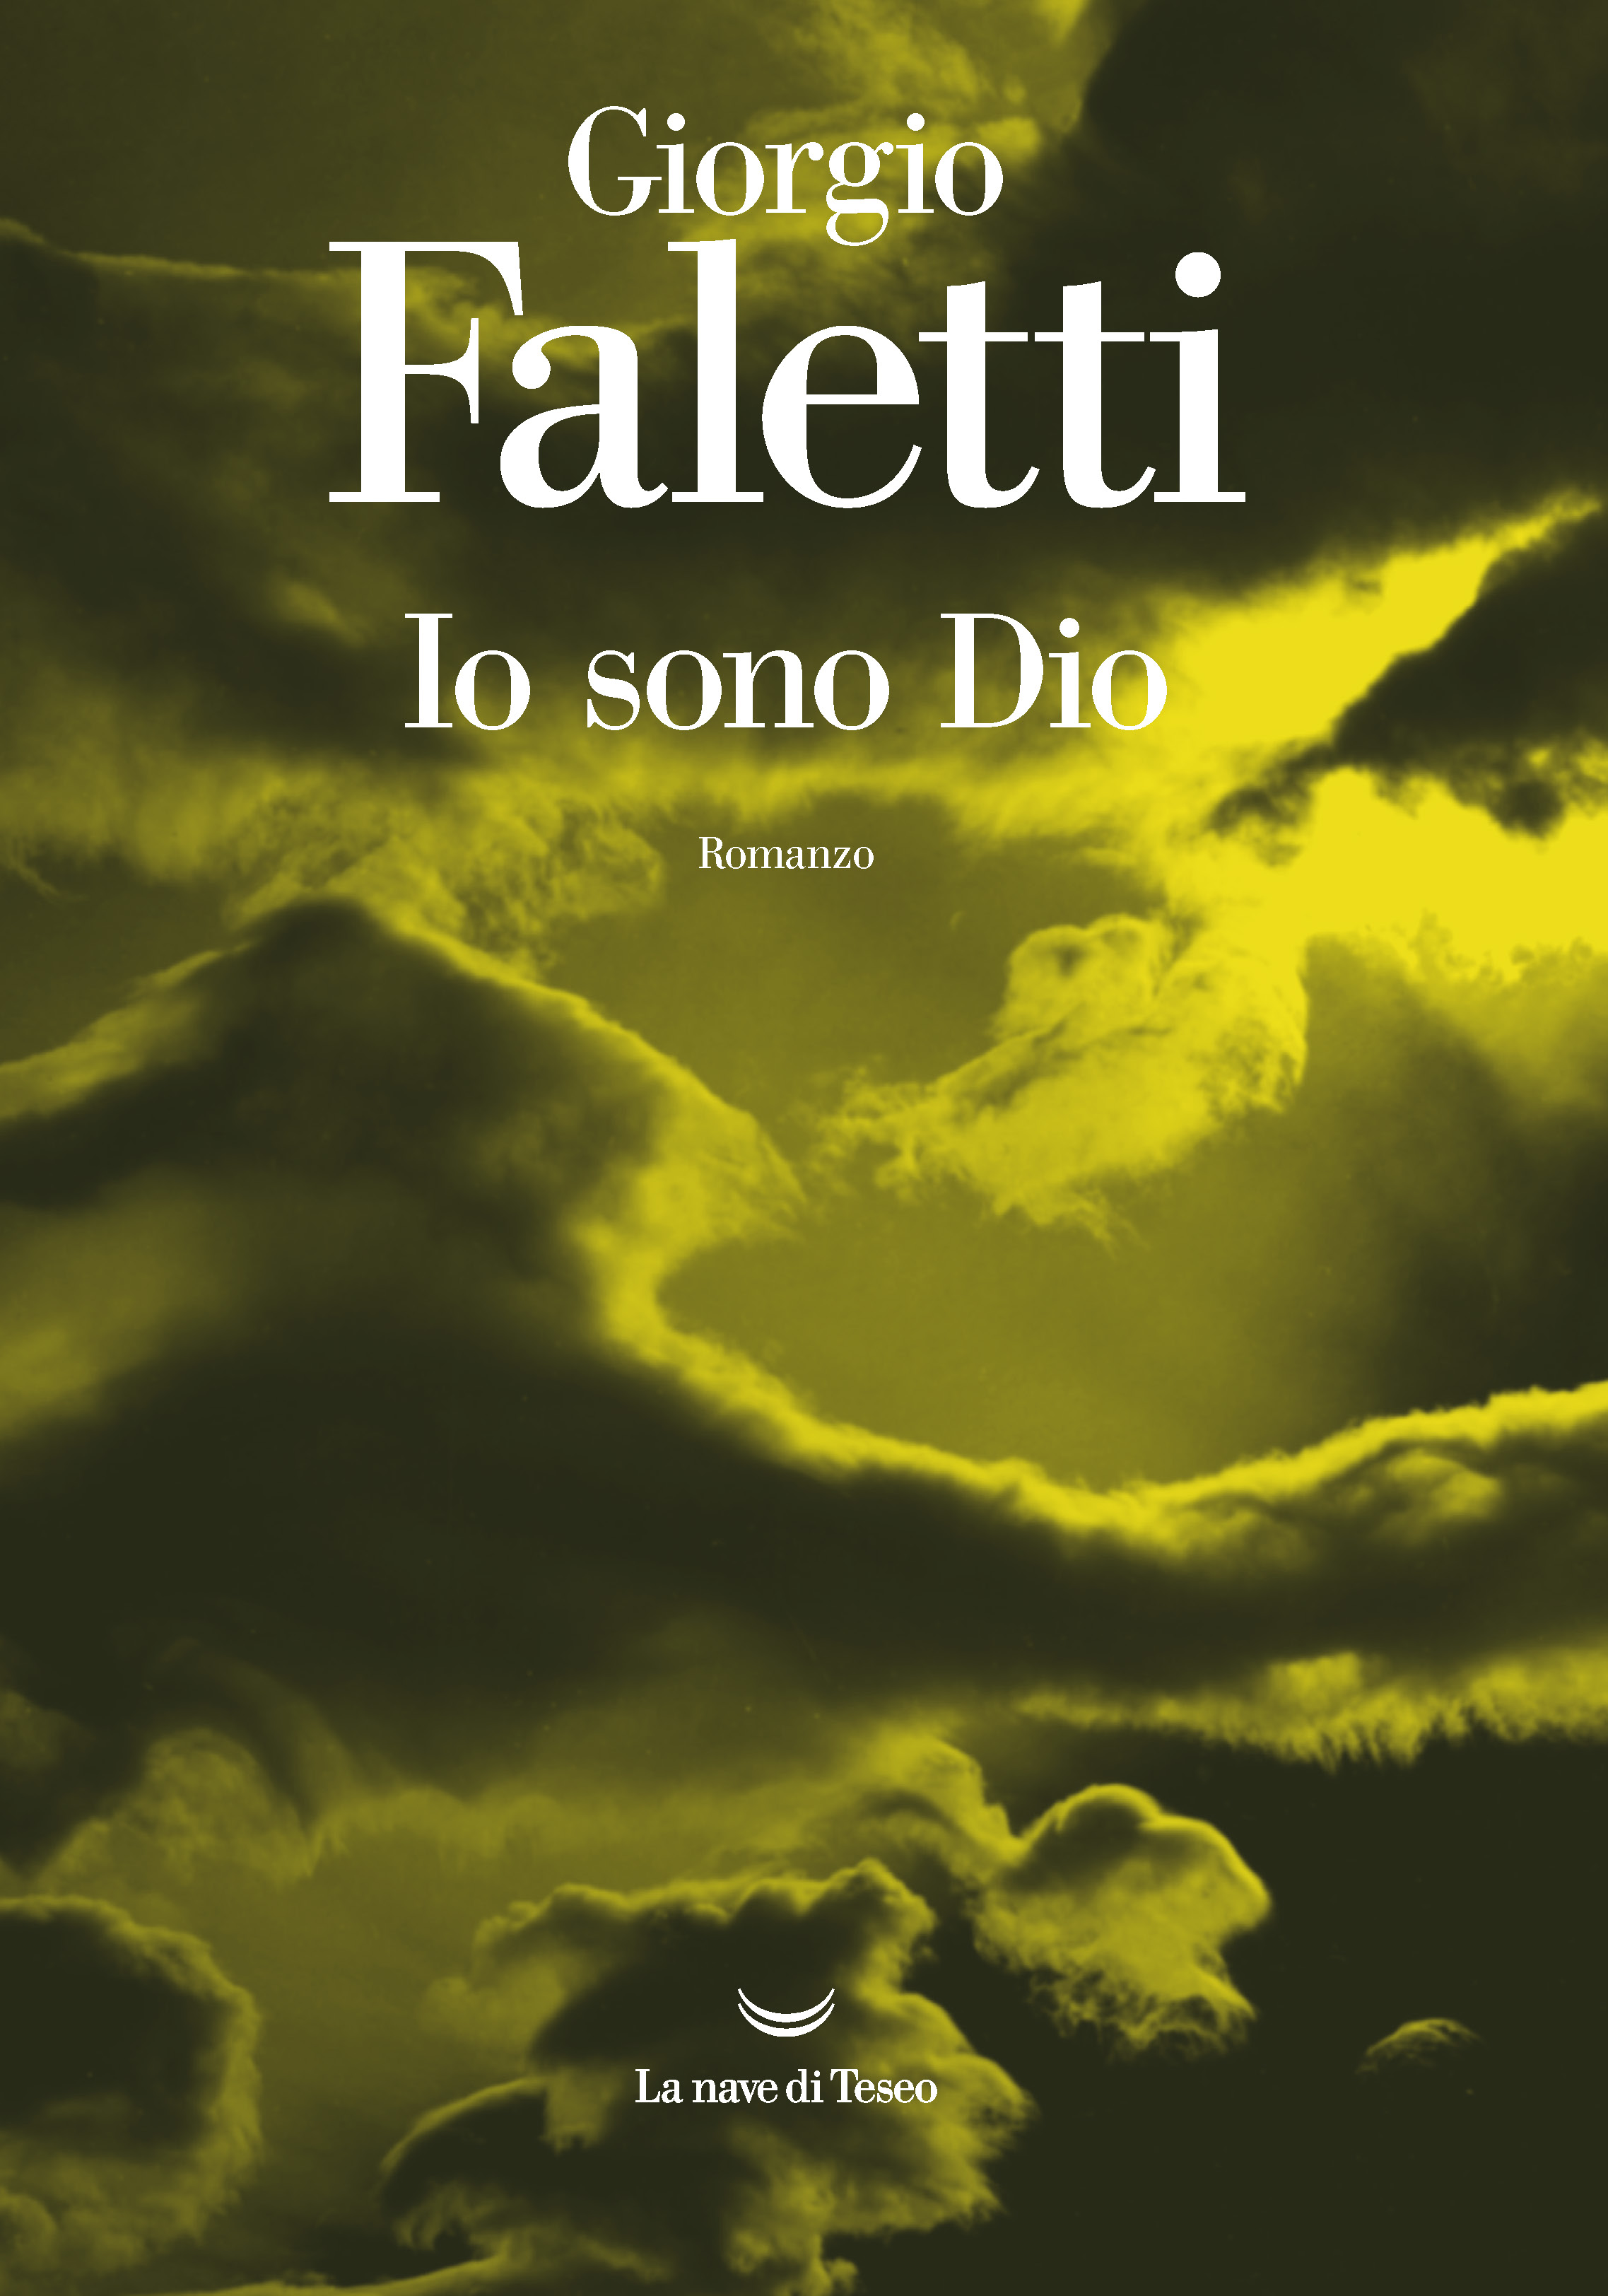 Copertina del romanzo di Giorgio Faletti Io sono Dio, pubblicato da La Nave di Teseo 